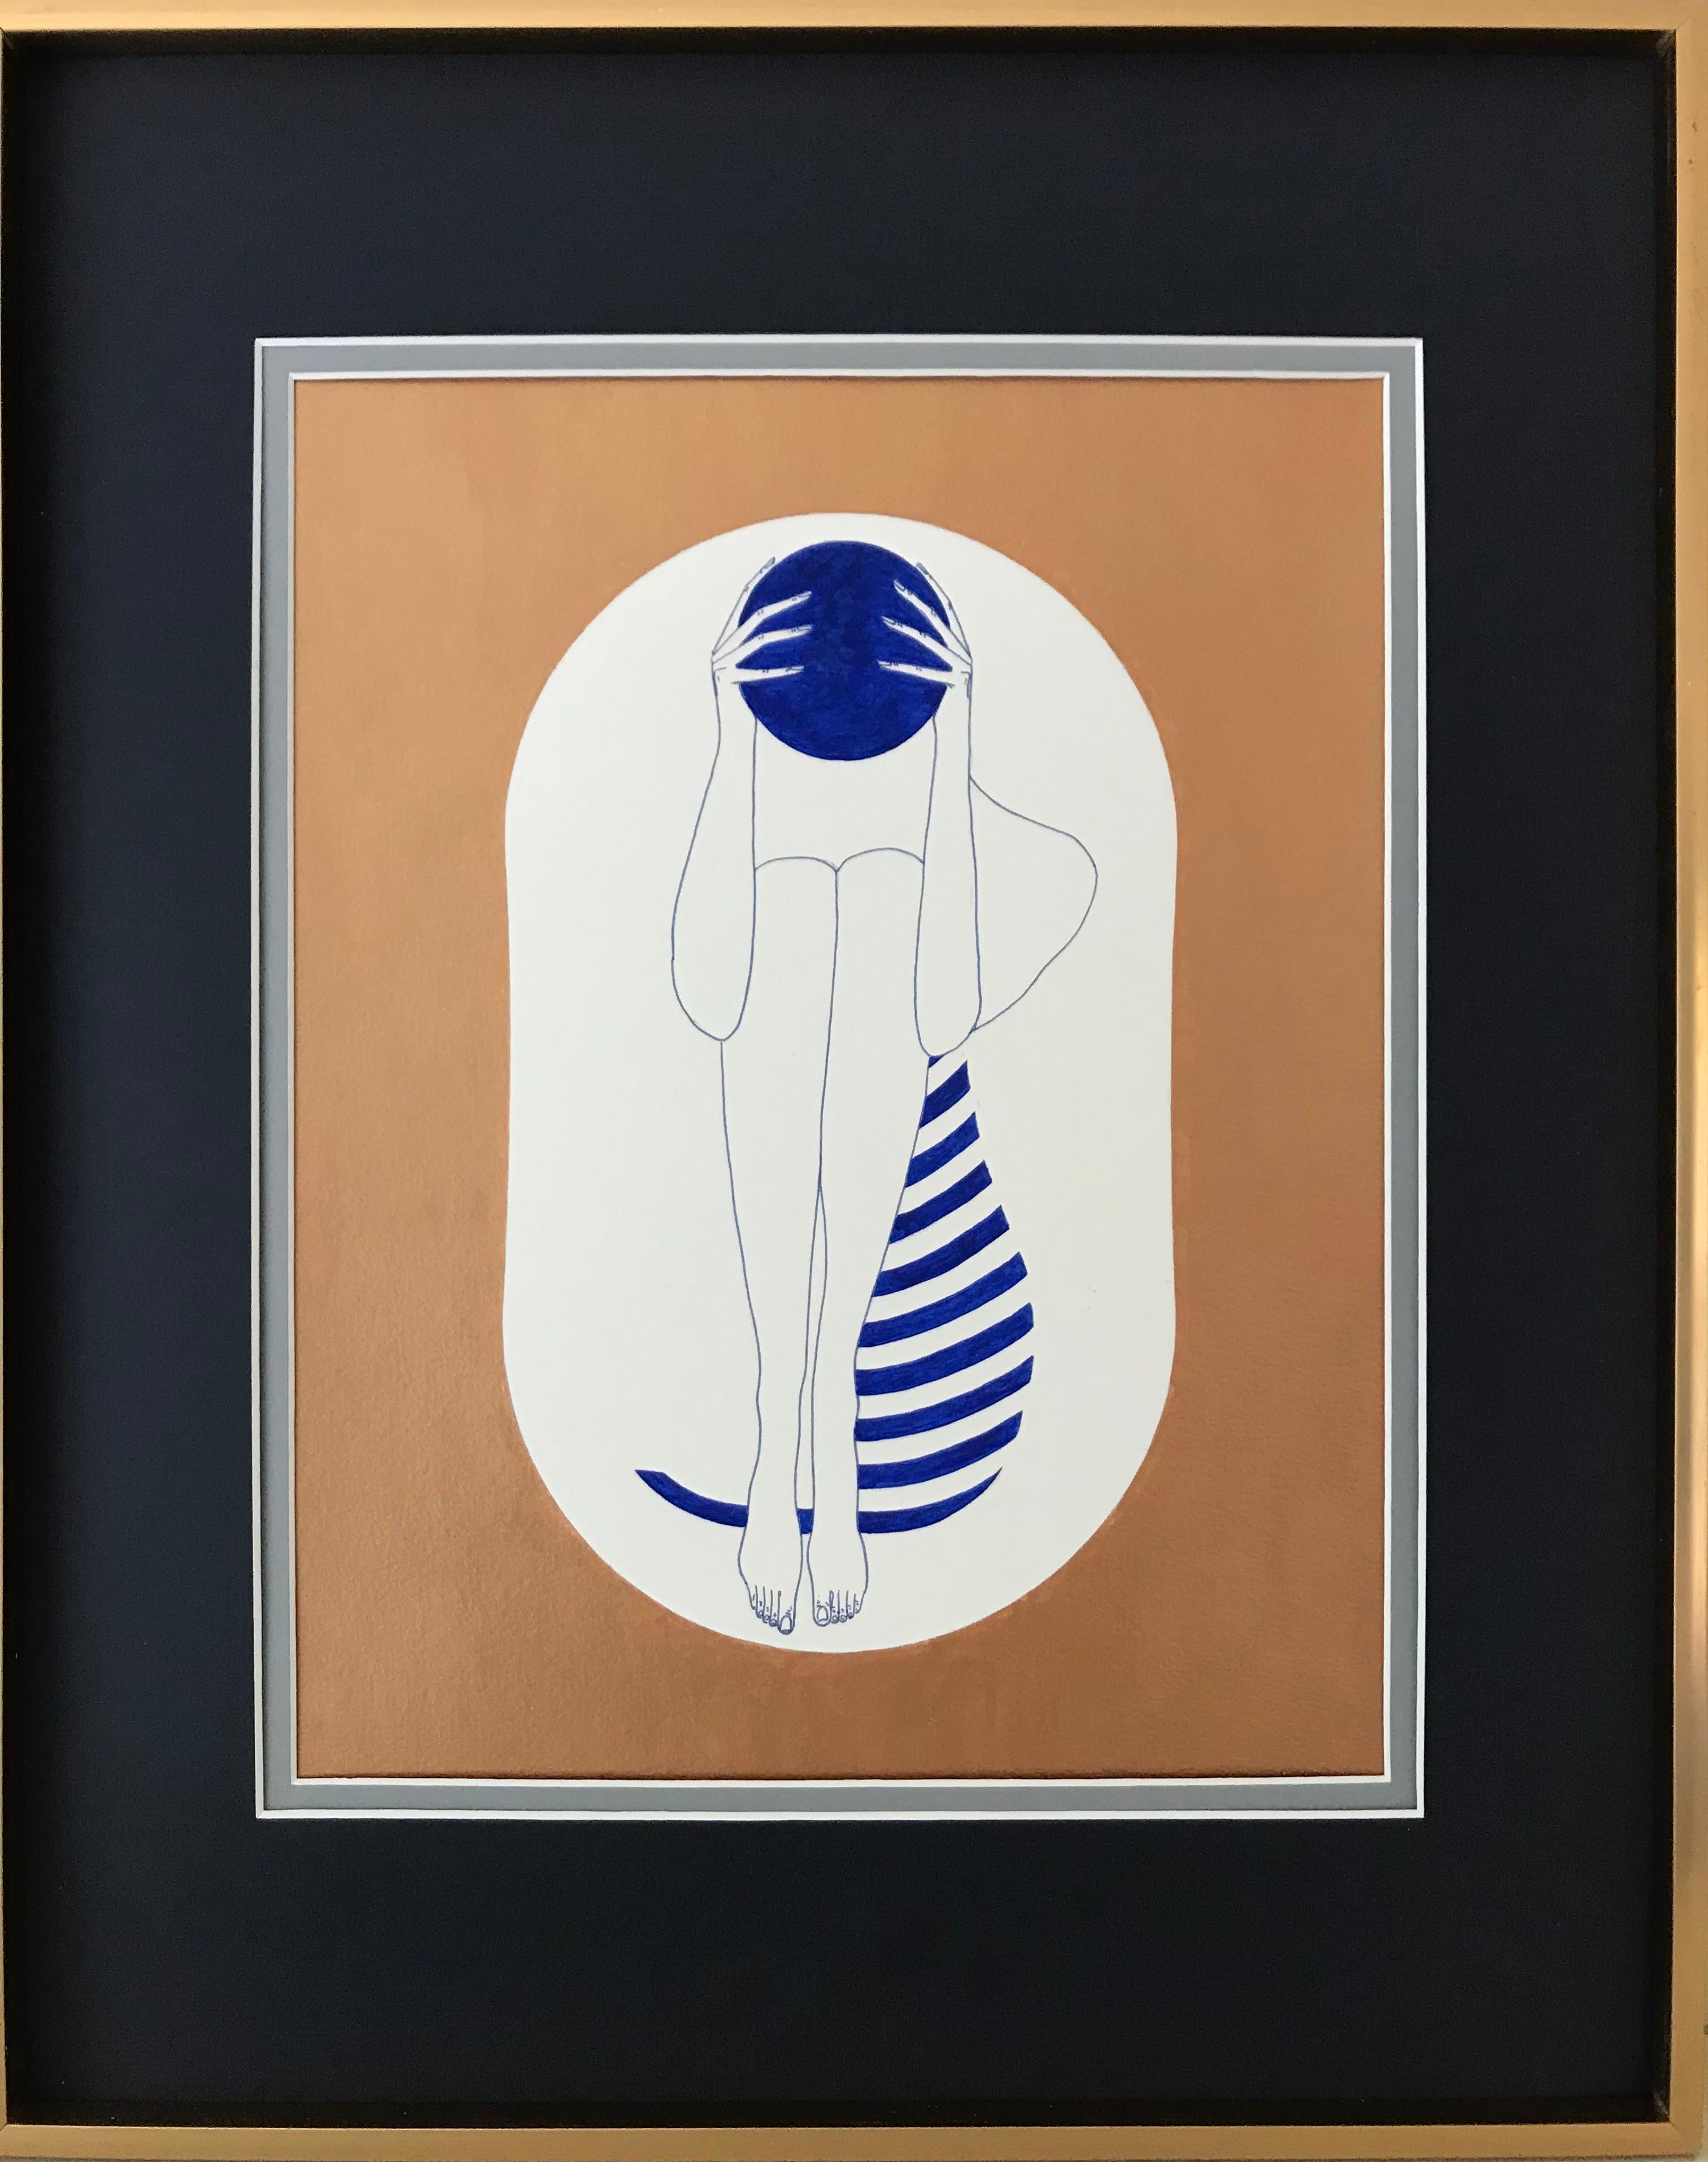 Bronze- und weiße Kapseln - Linienzeichnungsfigur mit ultramarinfarbener Scheibe, Streifen – Painting von Mila Akopova